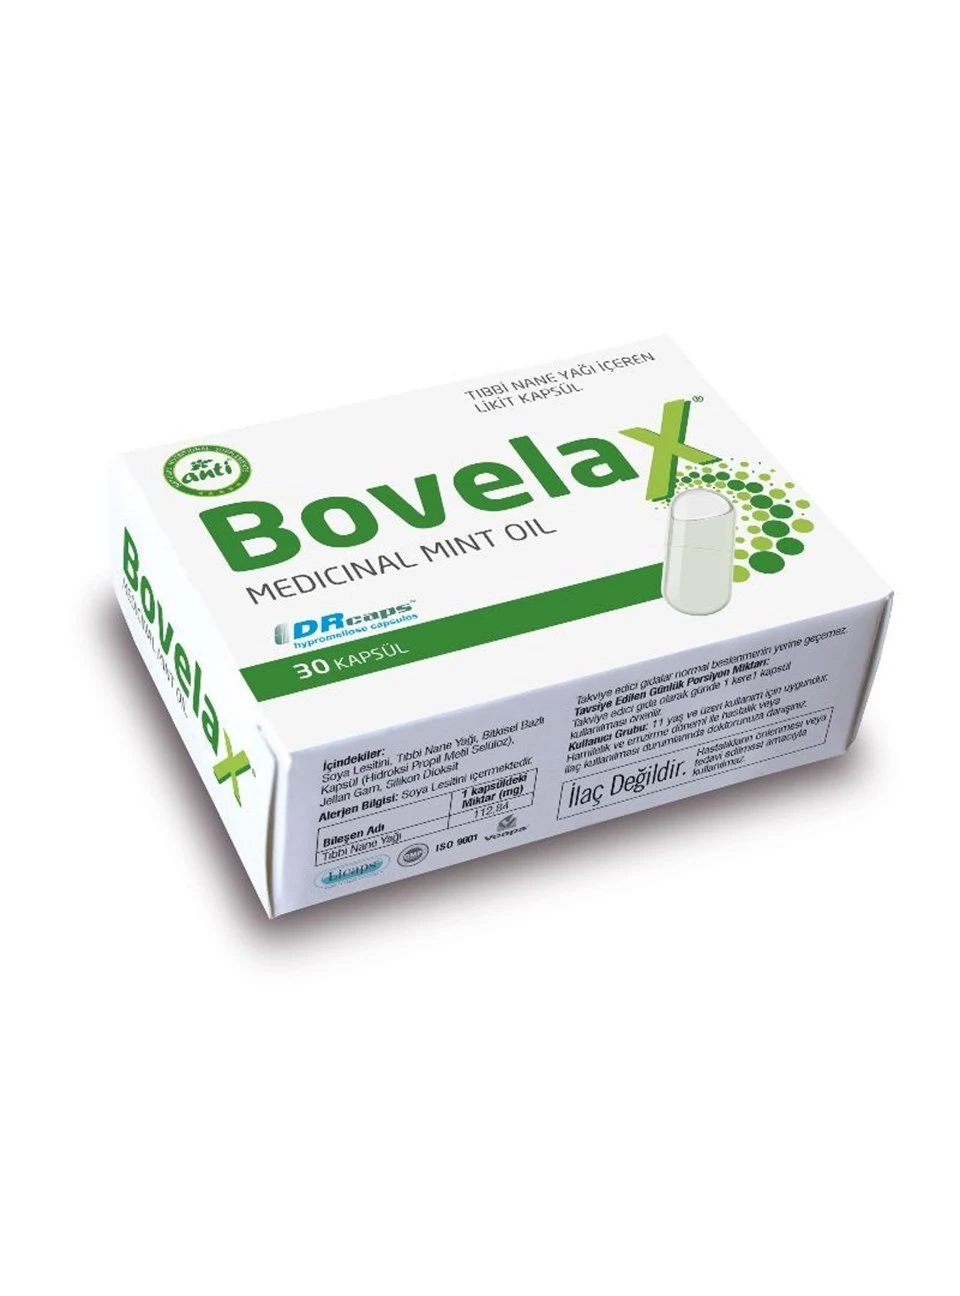 Bovelax Medical Mint Oil 30 Kapsul